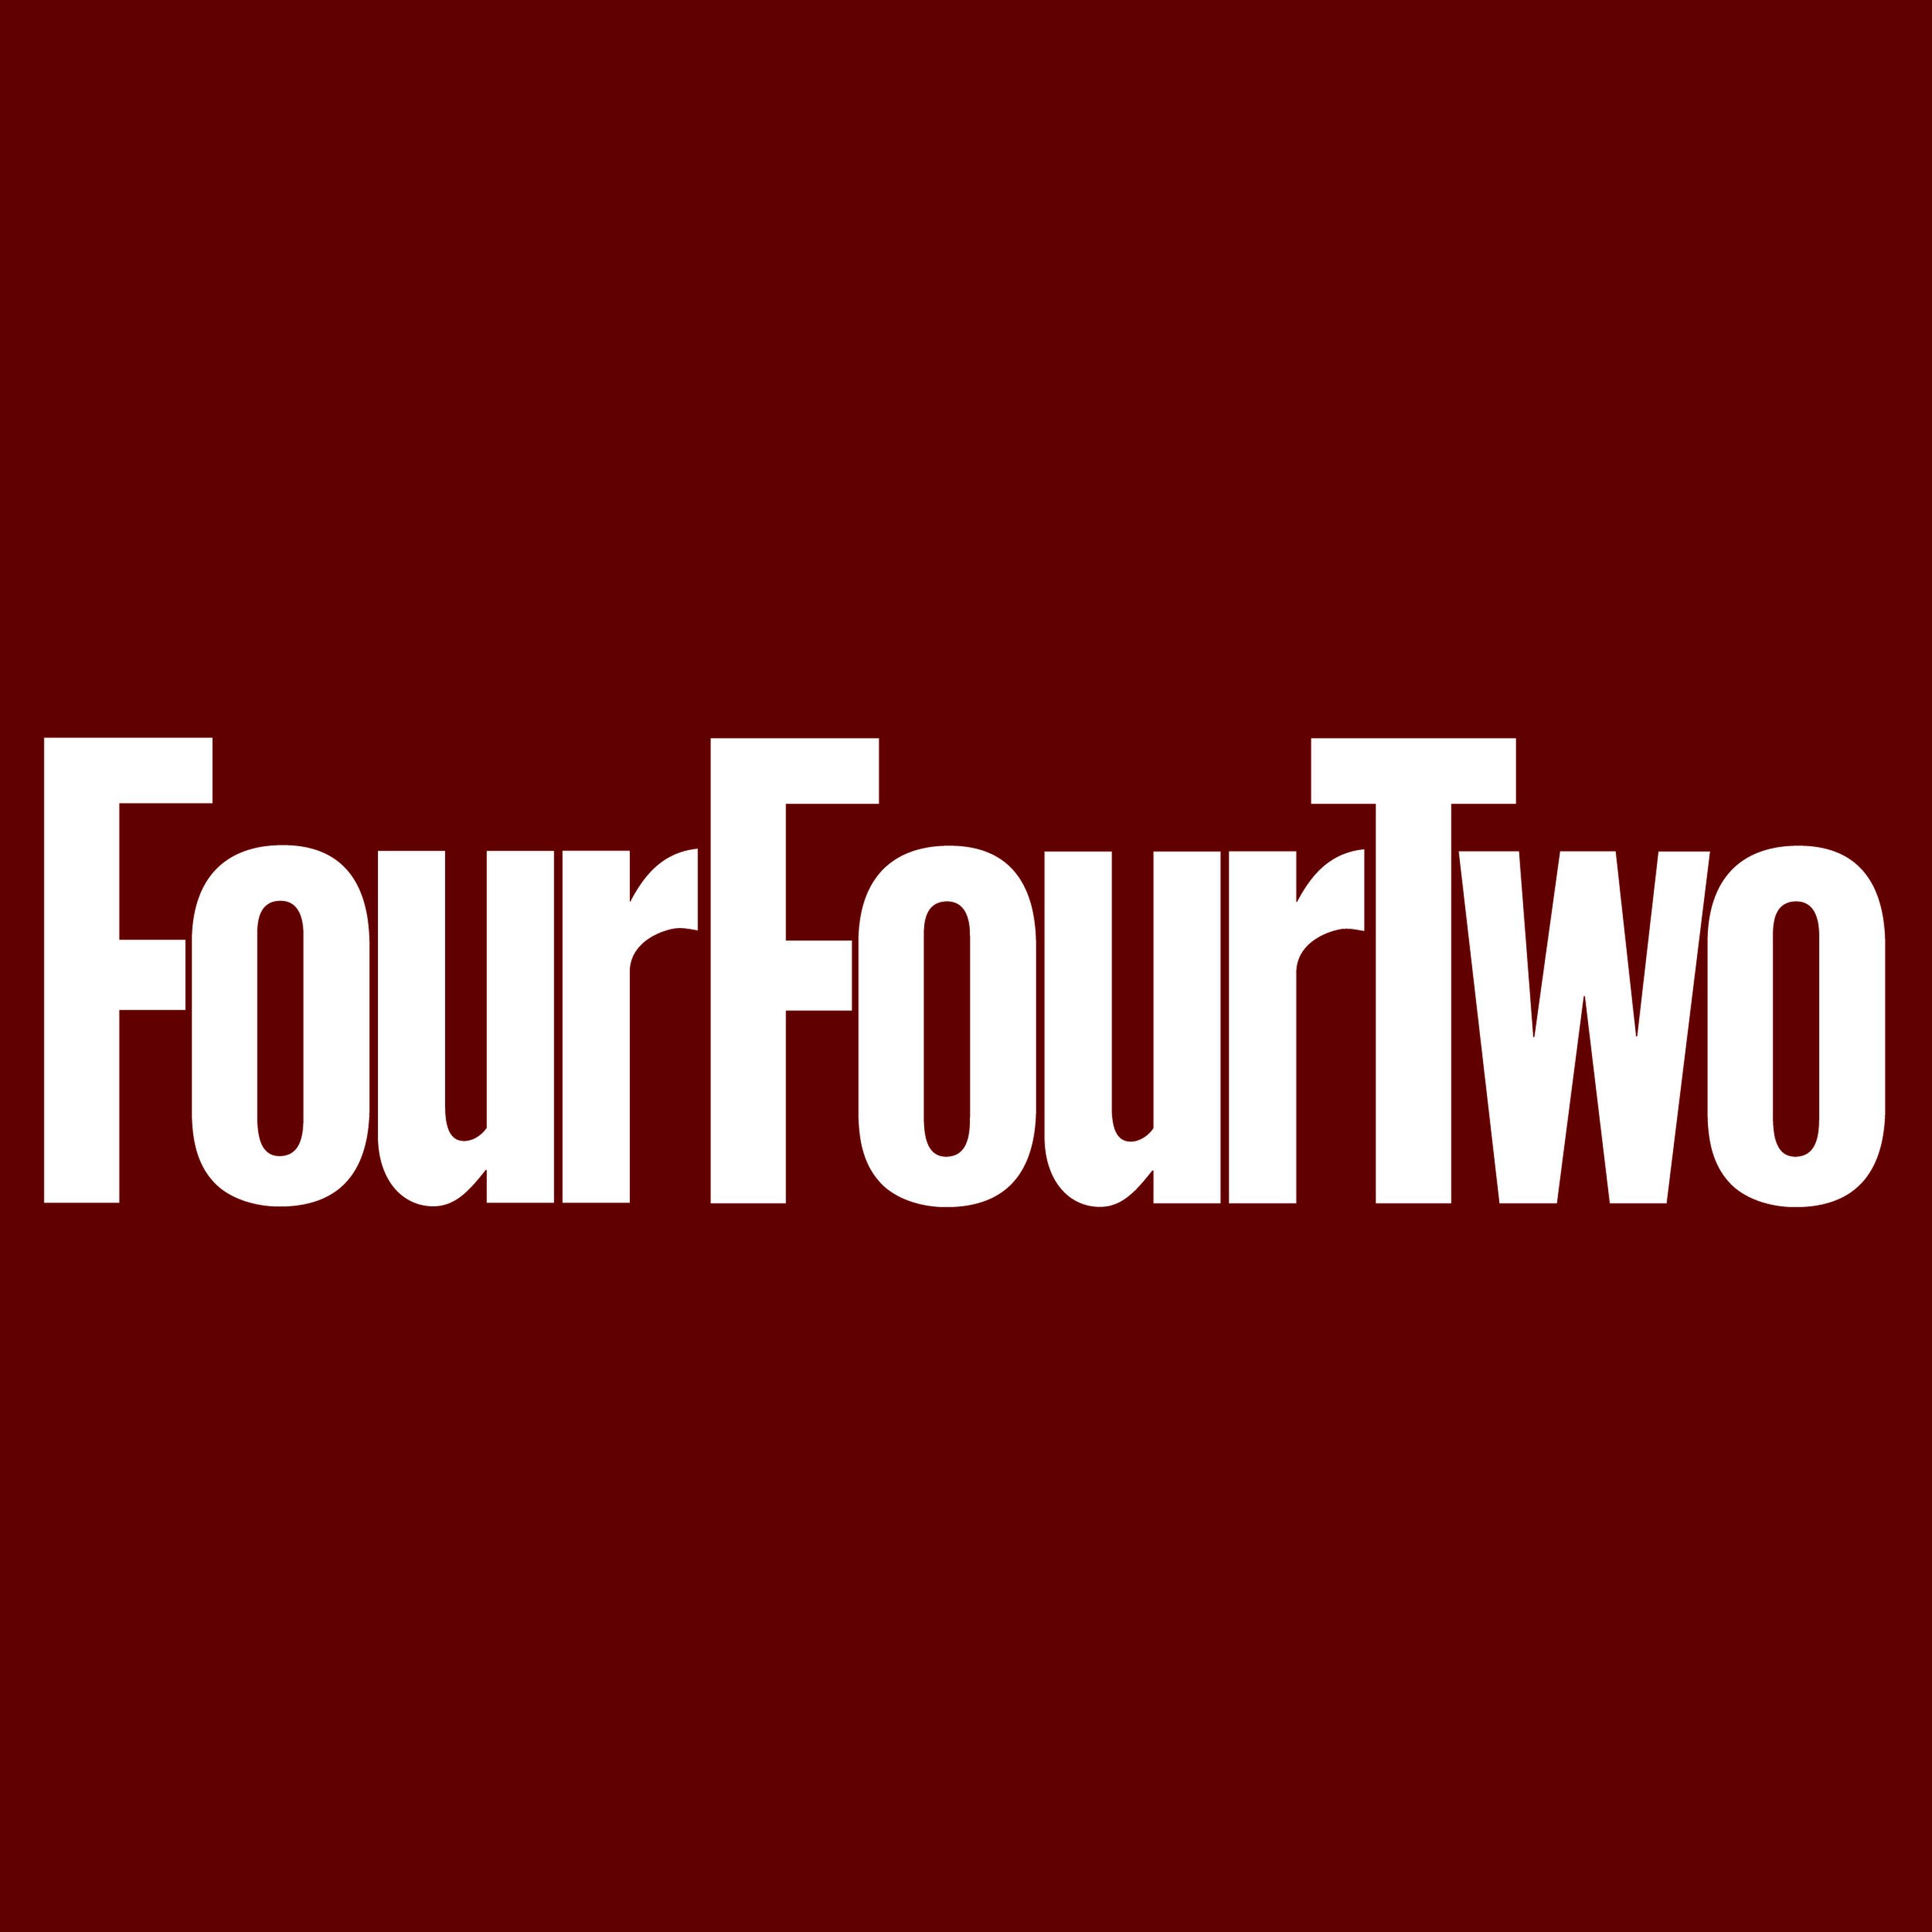 Издание FourFourTwo представило рейтинг лучших голкиперов 21 века